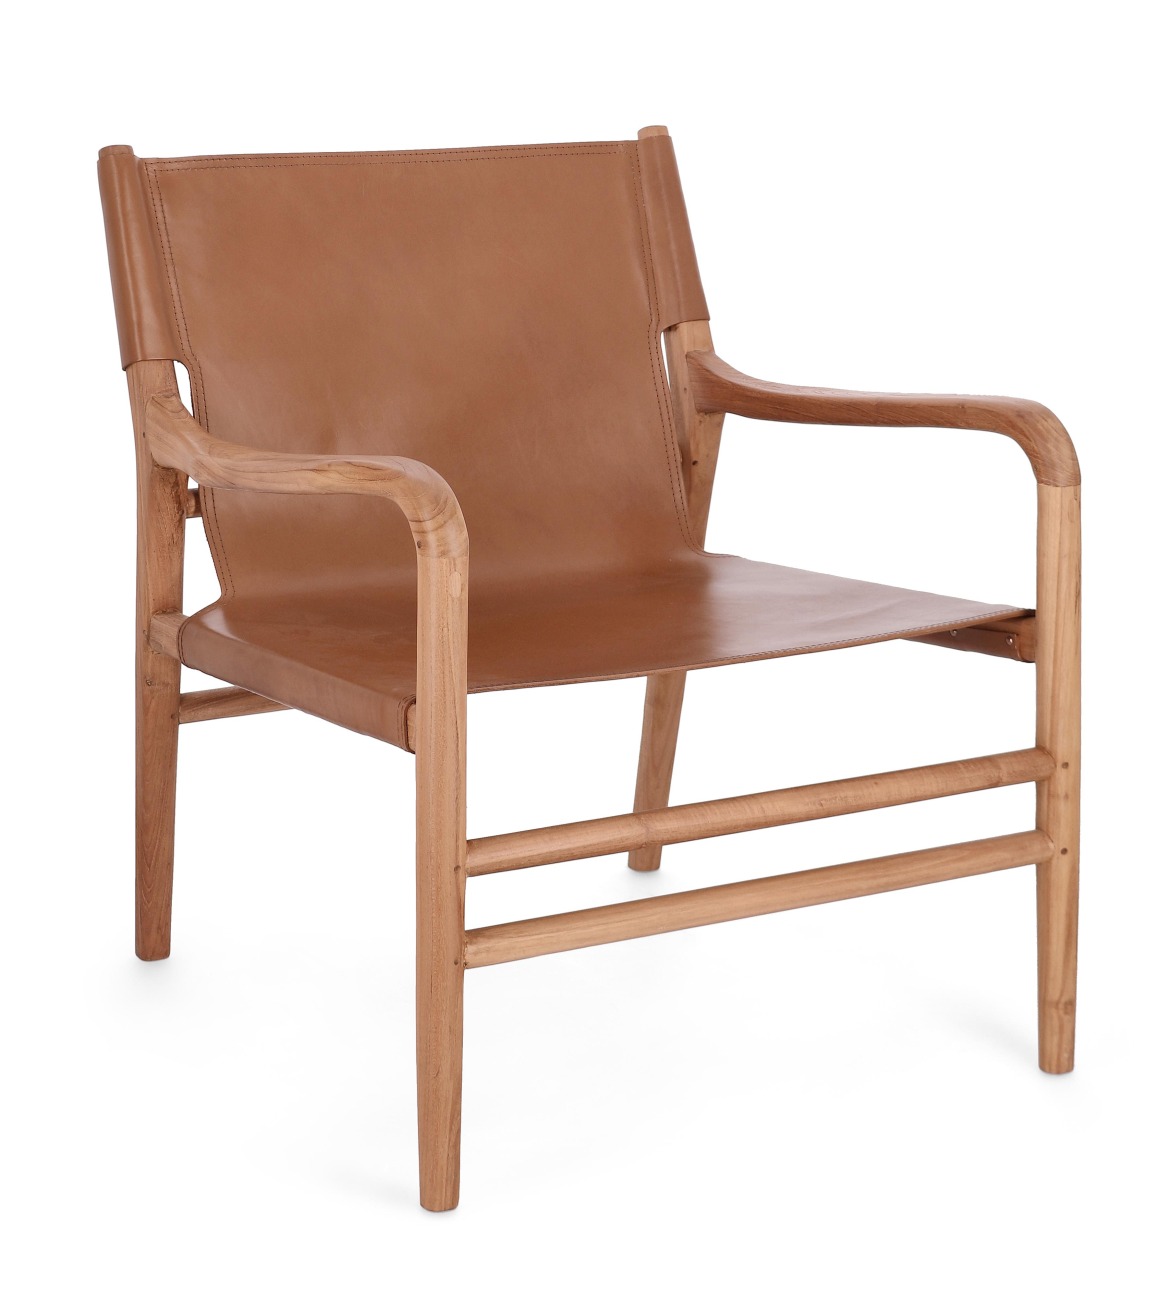 Der Sessel Caroline überzeugt mit seinem modernen Stil. Gefertigt wurde er aus Leder, welches einen Cognac Farbton besitzt. Das Gestell ist aus Teakholz und hat eine natürliche Farbe. Der Sessel besitzt eine Sitzhöhe von 57 cm.